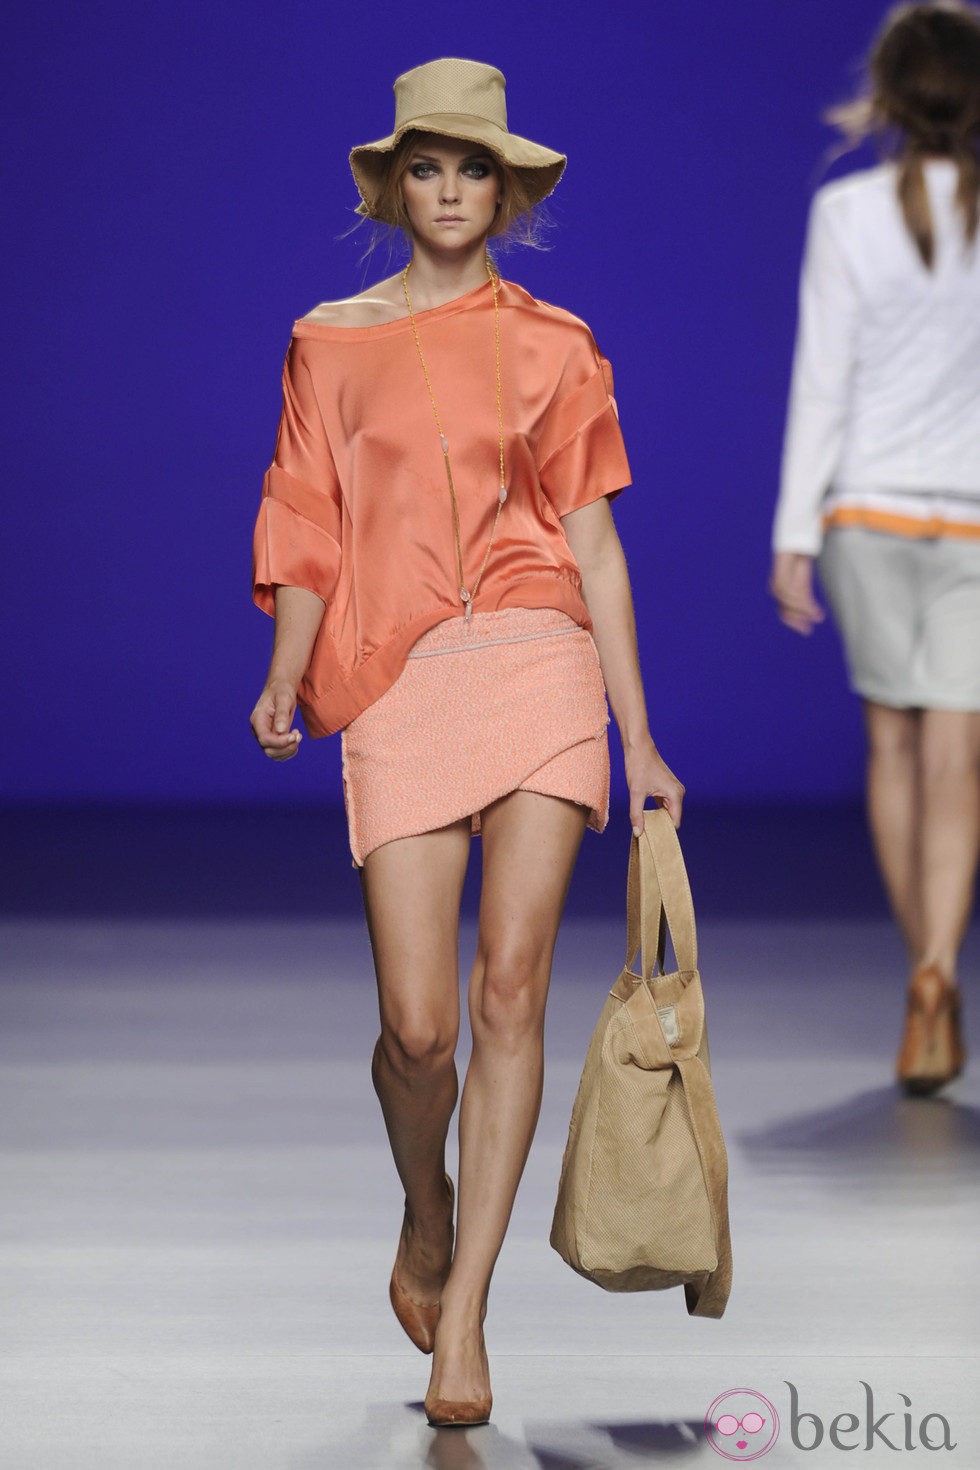 Blusa de seda coral y minifalda naranja de la colección primavera/verano 2013 de TCN